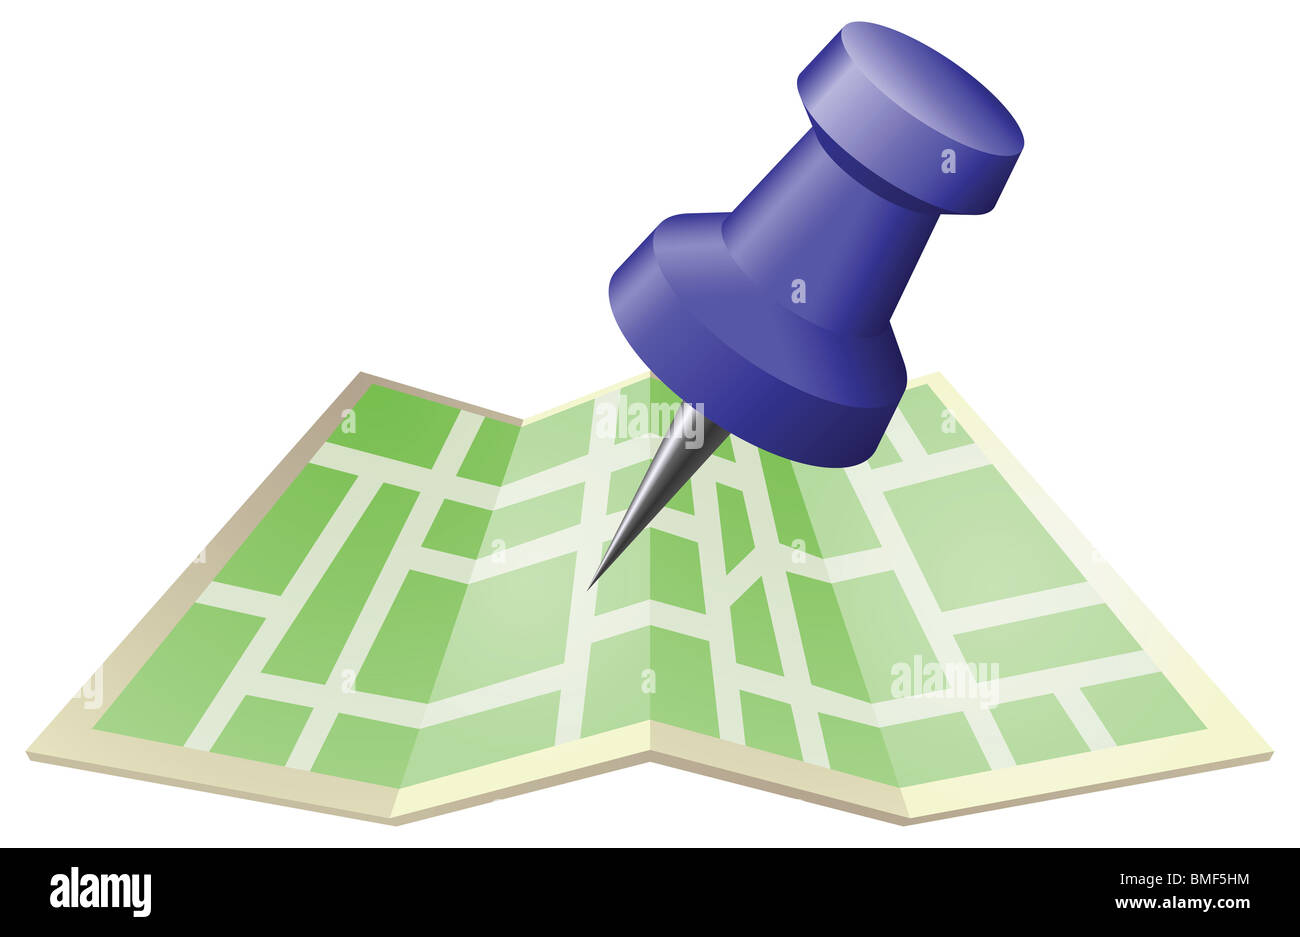 Una illustrazione di una mappa stradale con disegno a spingere il pin. Può essere usato come un'icona o illustrazione nel proprio diritto. Foto Stock